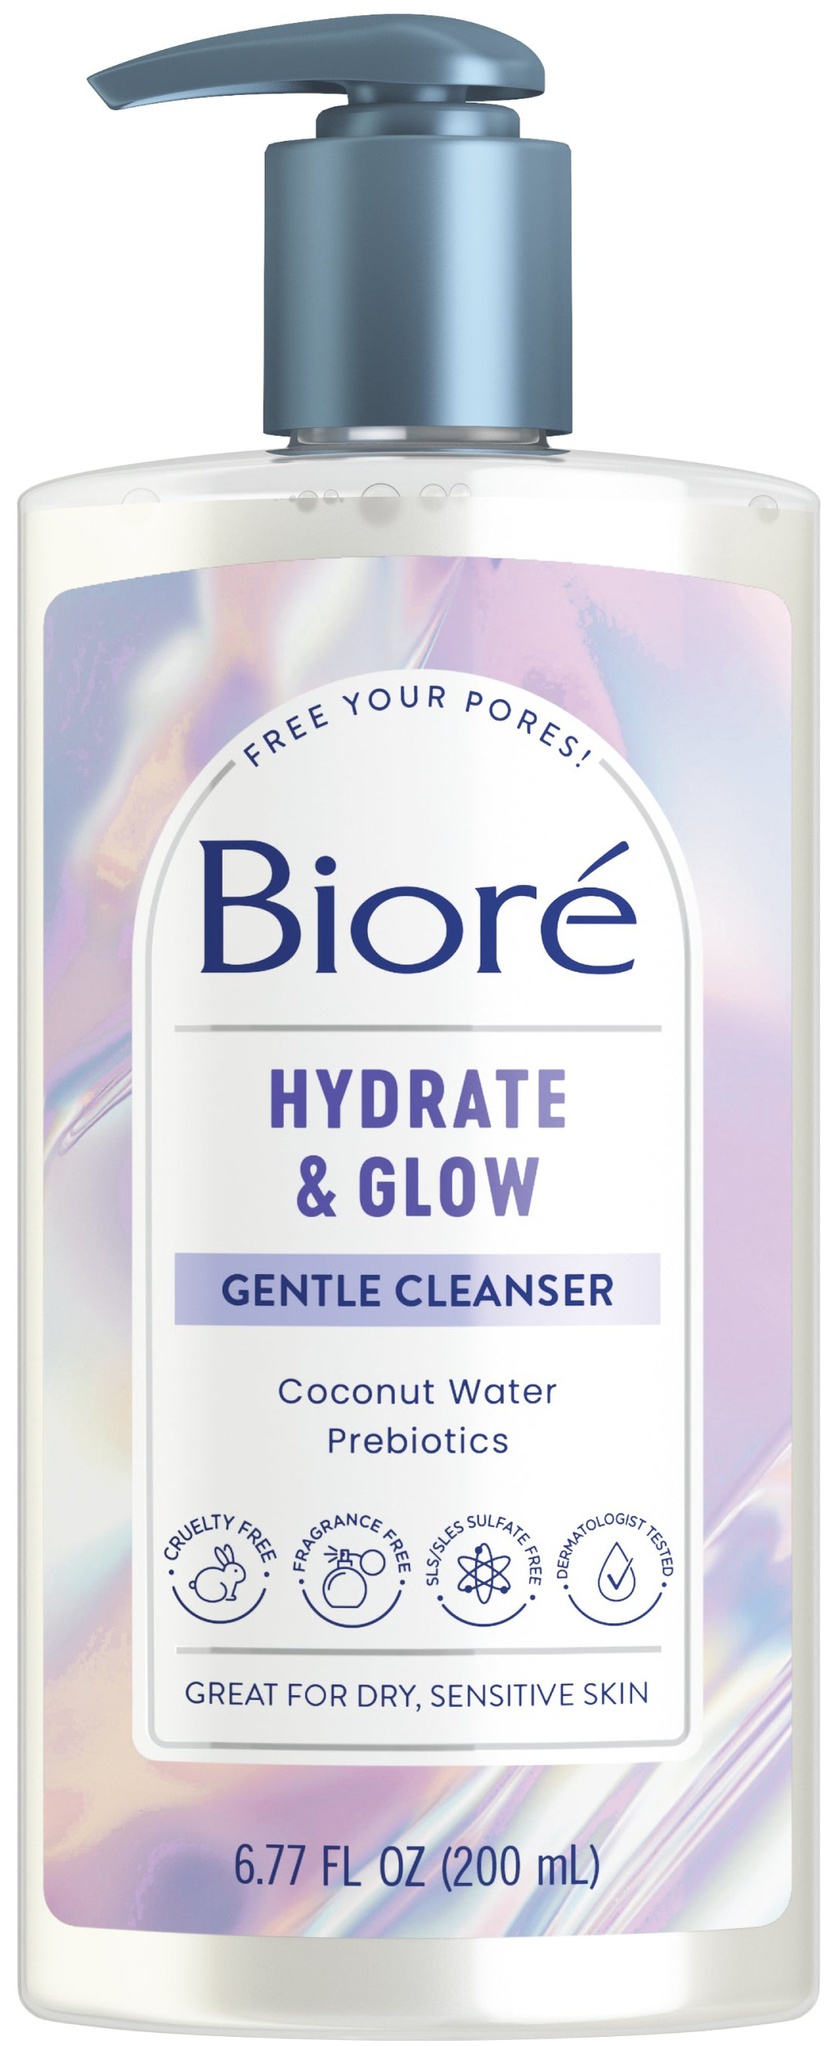 Biore Hydrate & Glow Gentle Cleanser